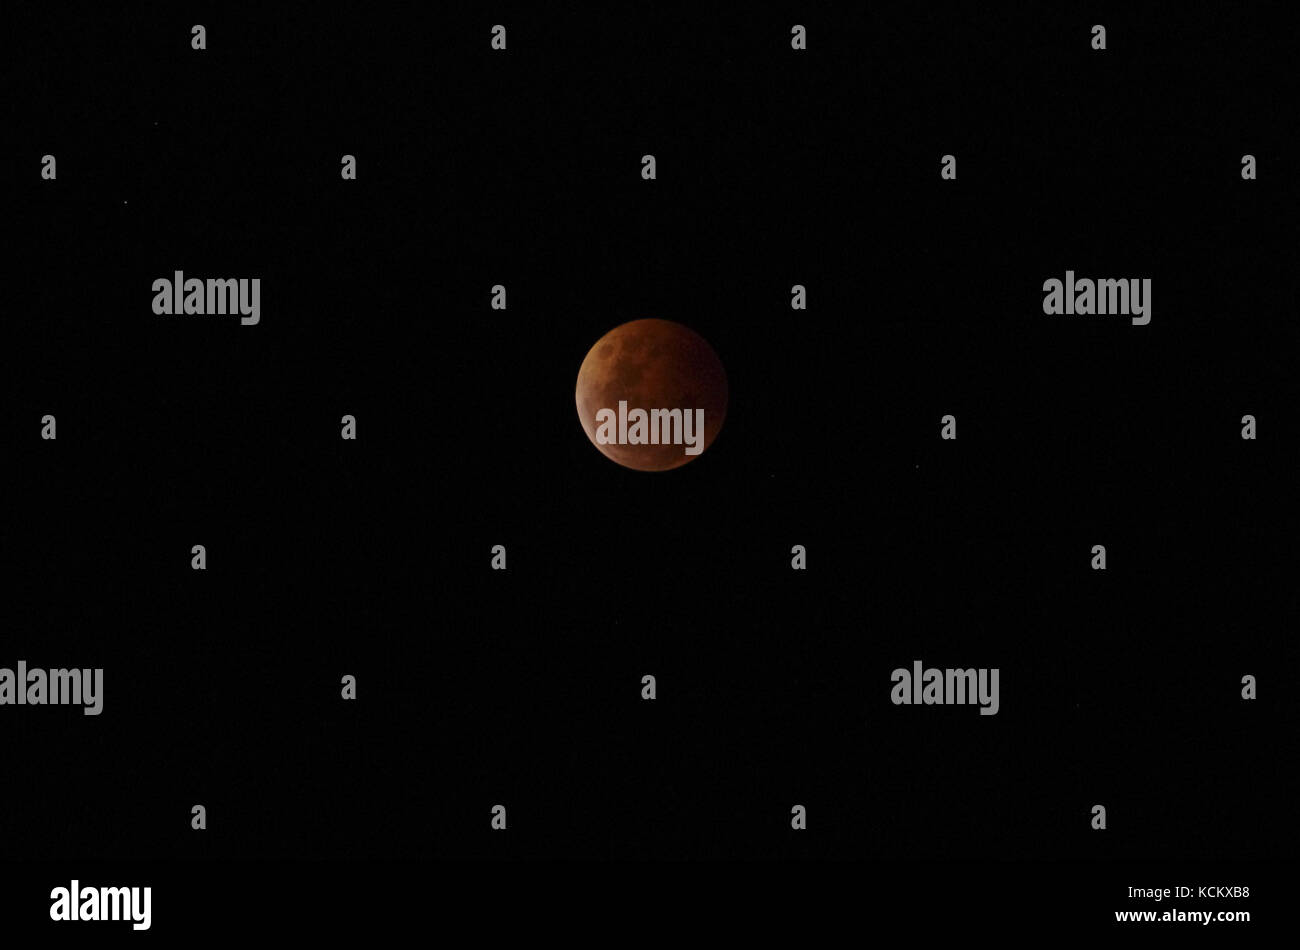 Lunar eclipse, 8 octobre 2014, une des six images de la série. L'éclipse a commencé à 7,15 h, était totale à 8,55 h et s'est terminée à 10,35 h. Il est toujours o Banque D'Images